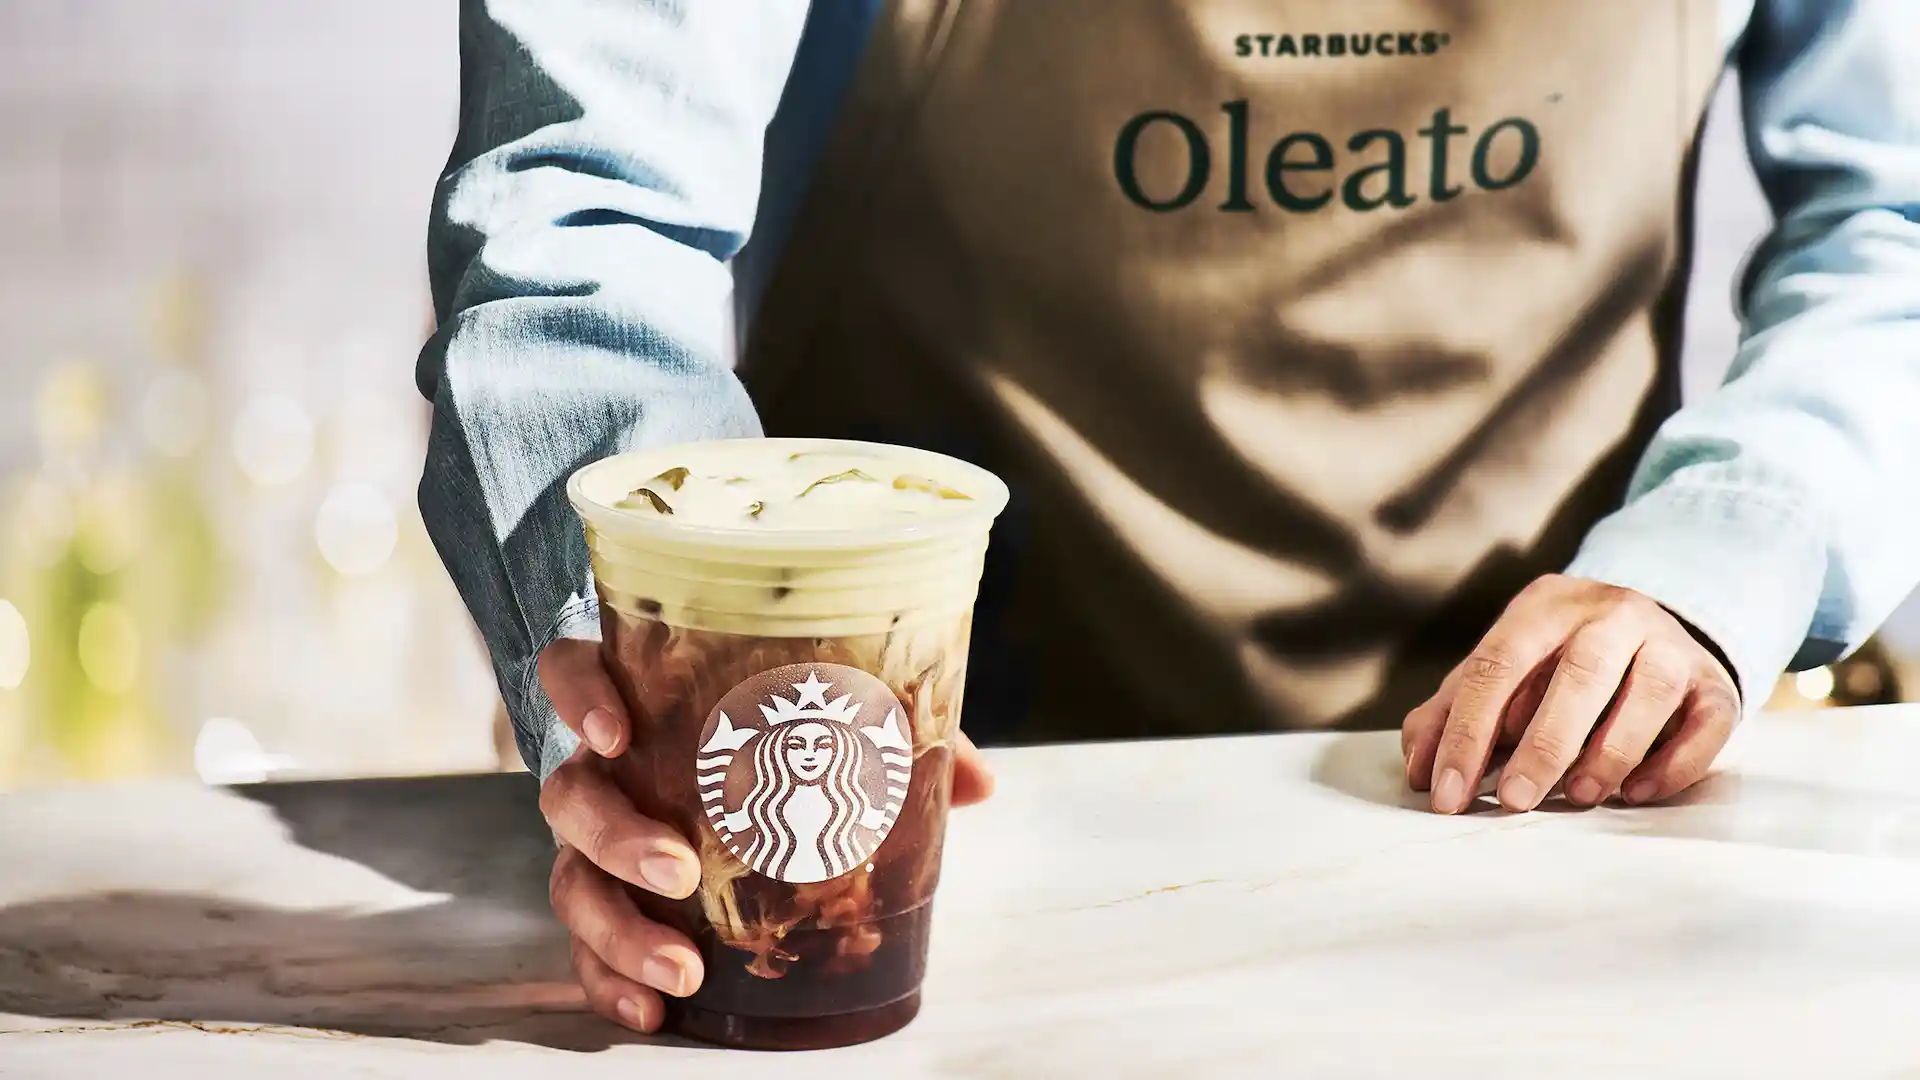 Cómo es Oleato, el nuevo café de Starbucks. ¿Dónde conseguirlo?